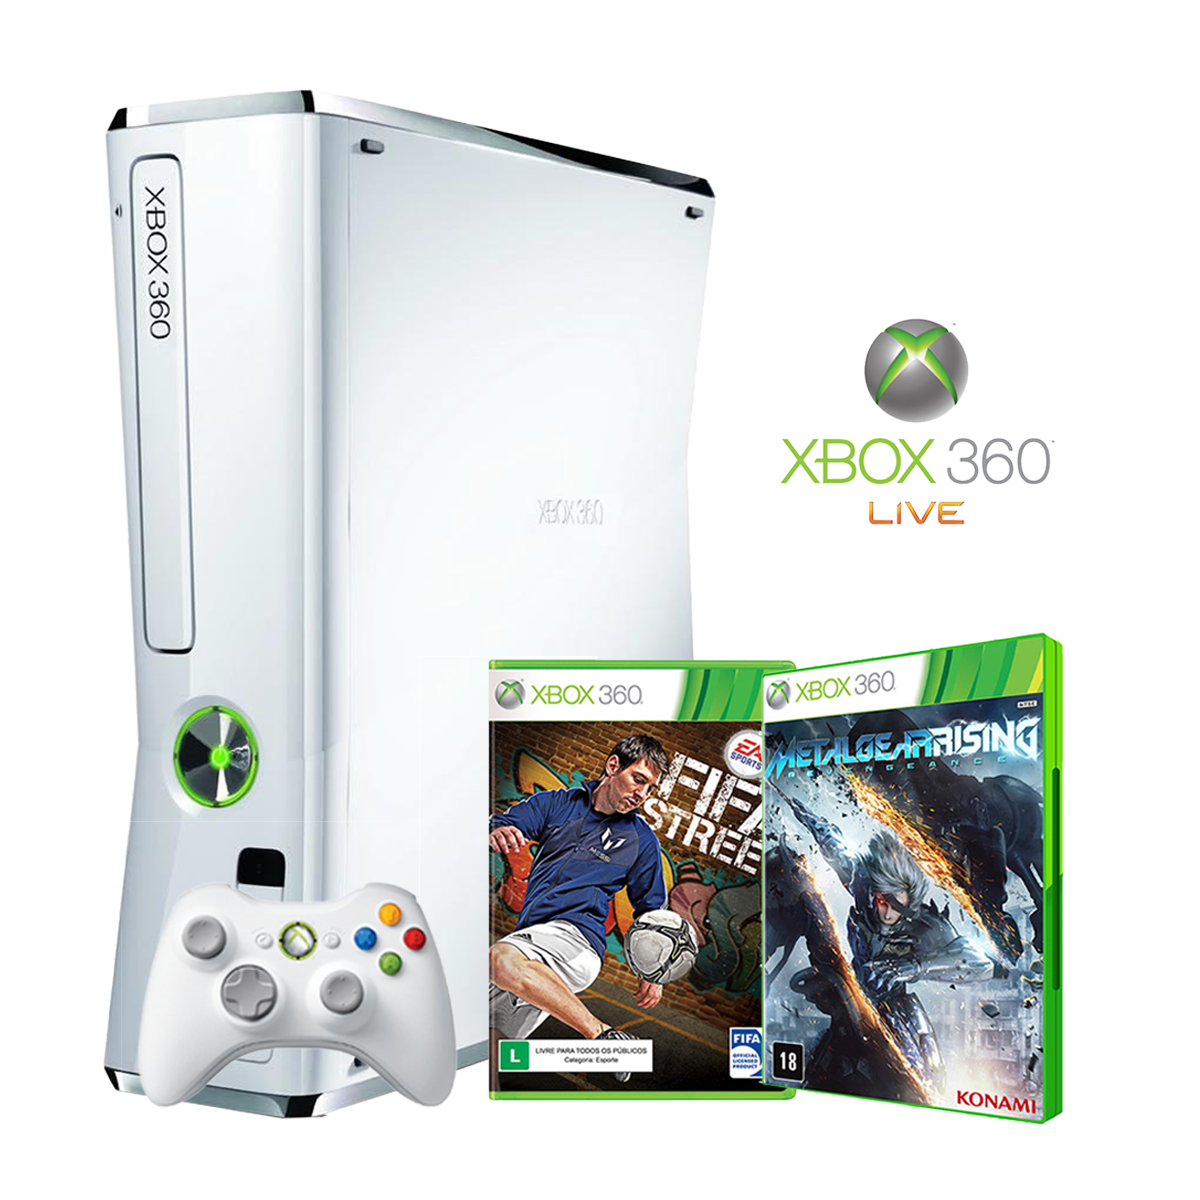 Jogo Original para Xbox 360 em até 12x Sem Juros - Videogames - Bosque, Rio  Branco 1184849587